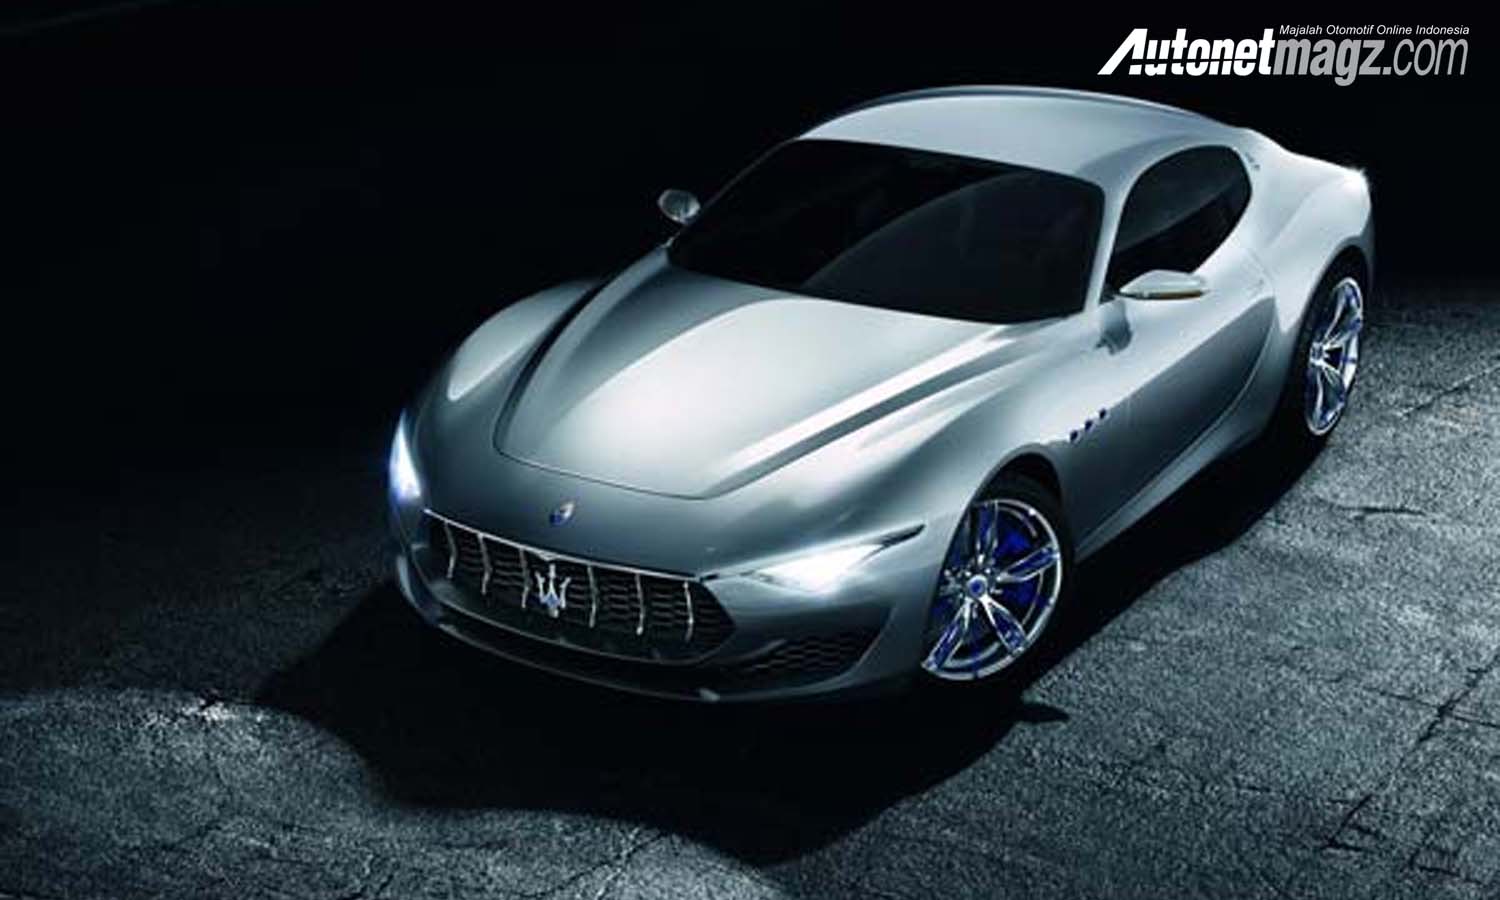 Berita, Maserati Alfieri depan: Mobil Sport Listrik Maserati Sedang Dikembangkan, Rilis 2020